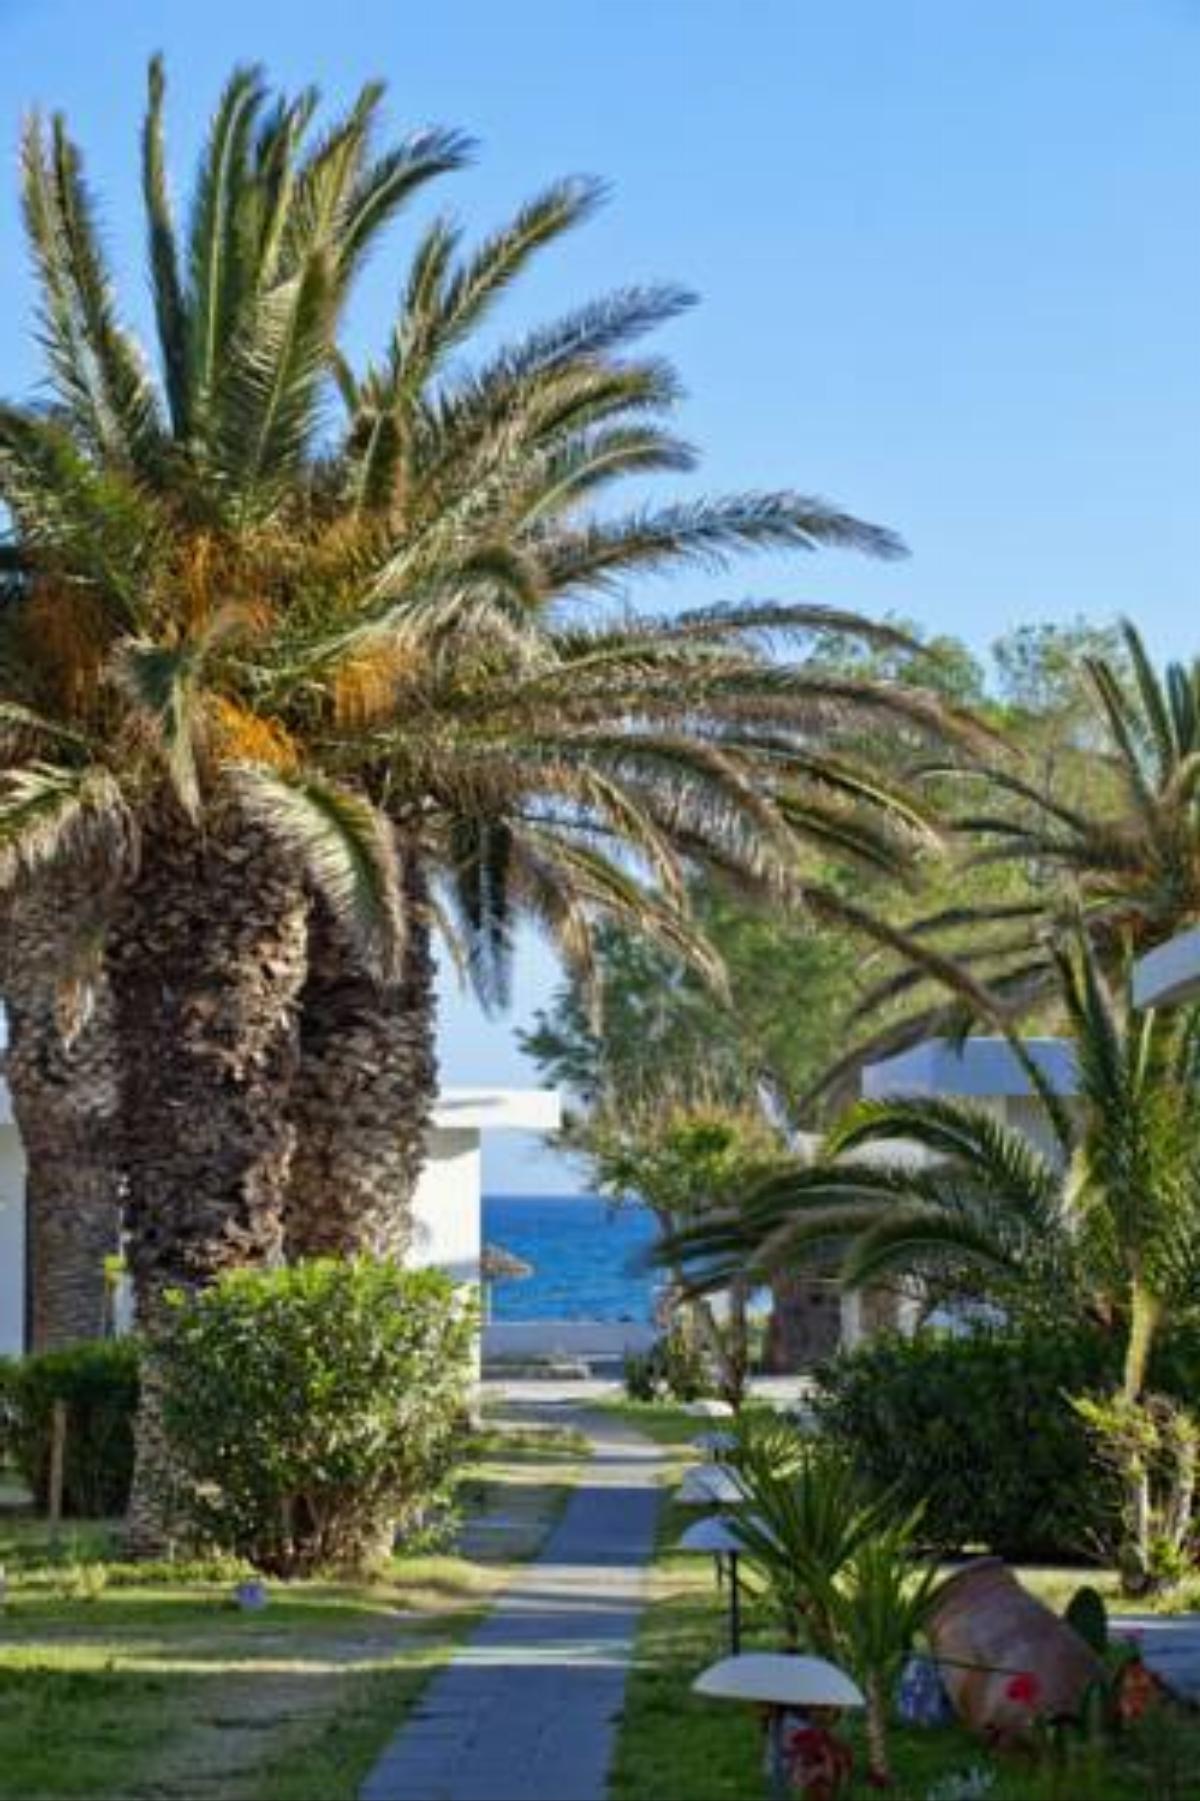 Civitel Creta Beach Hotel Amoudara Herakliou Greece